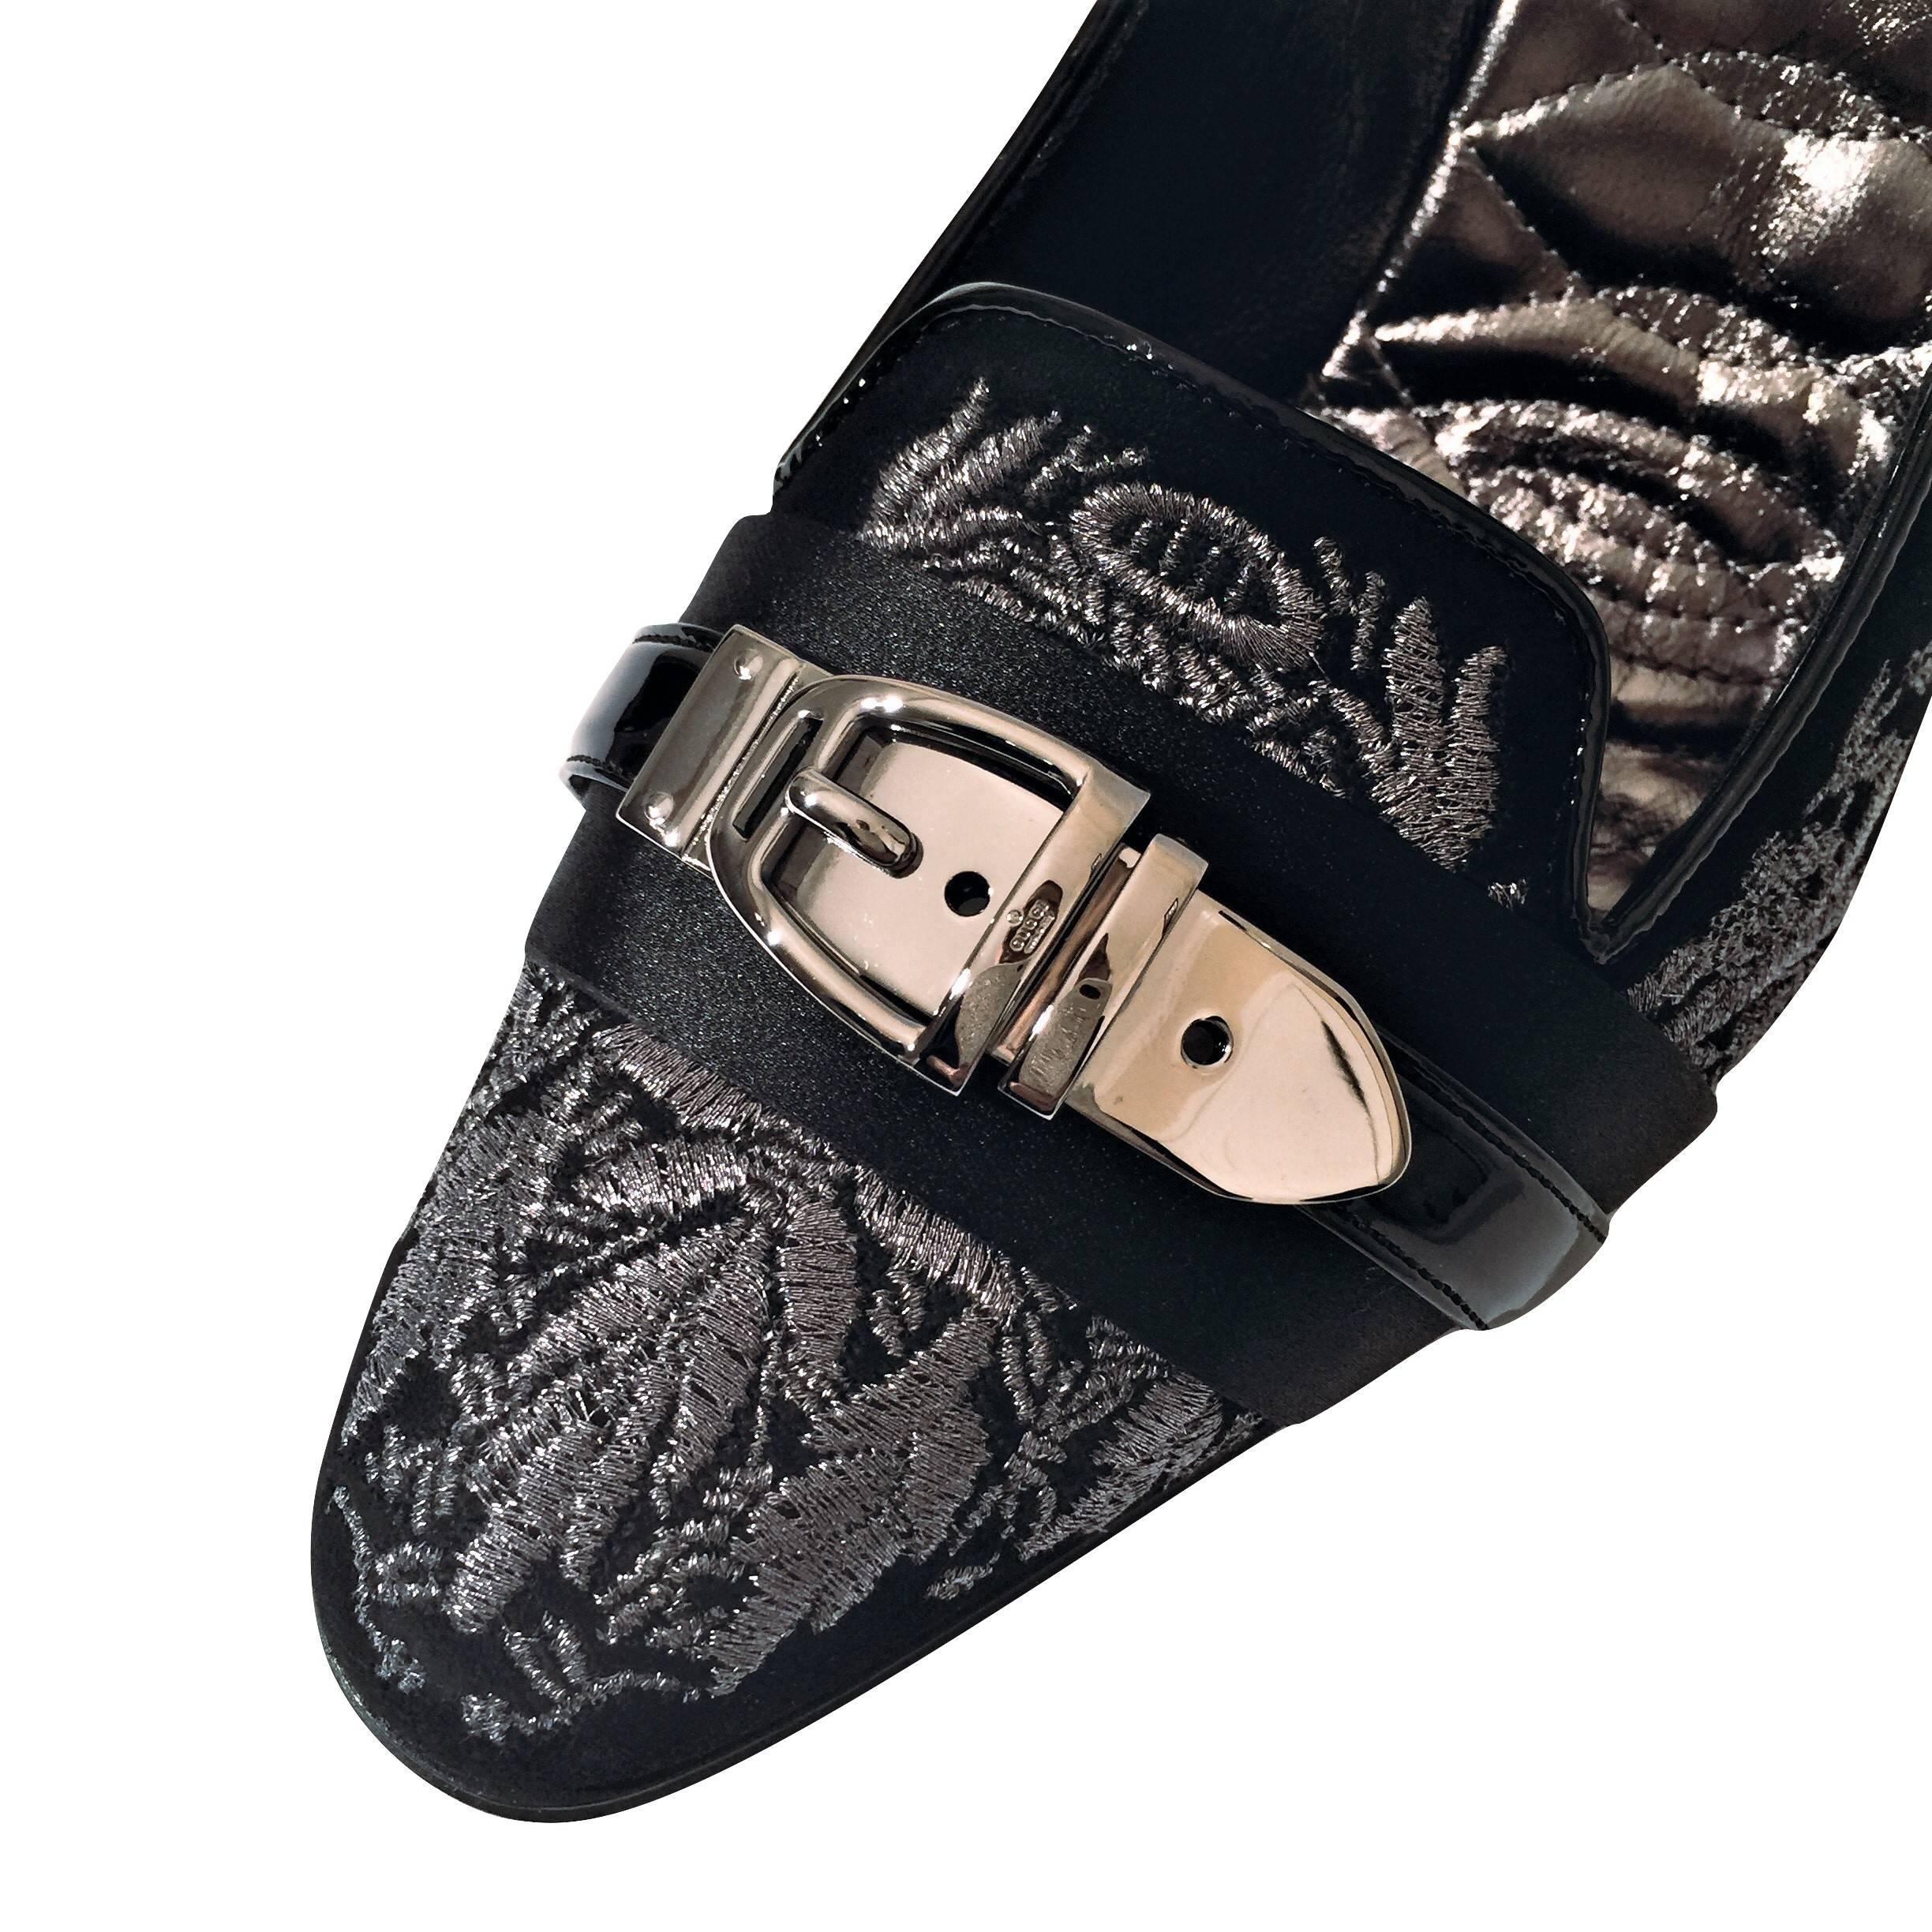 New Gucci Runway Suede Brocade Buckle Heels Pumps Sz 37.5 11